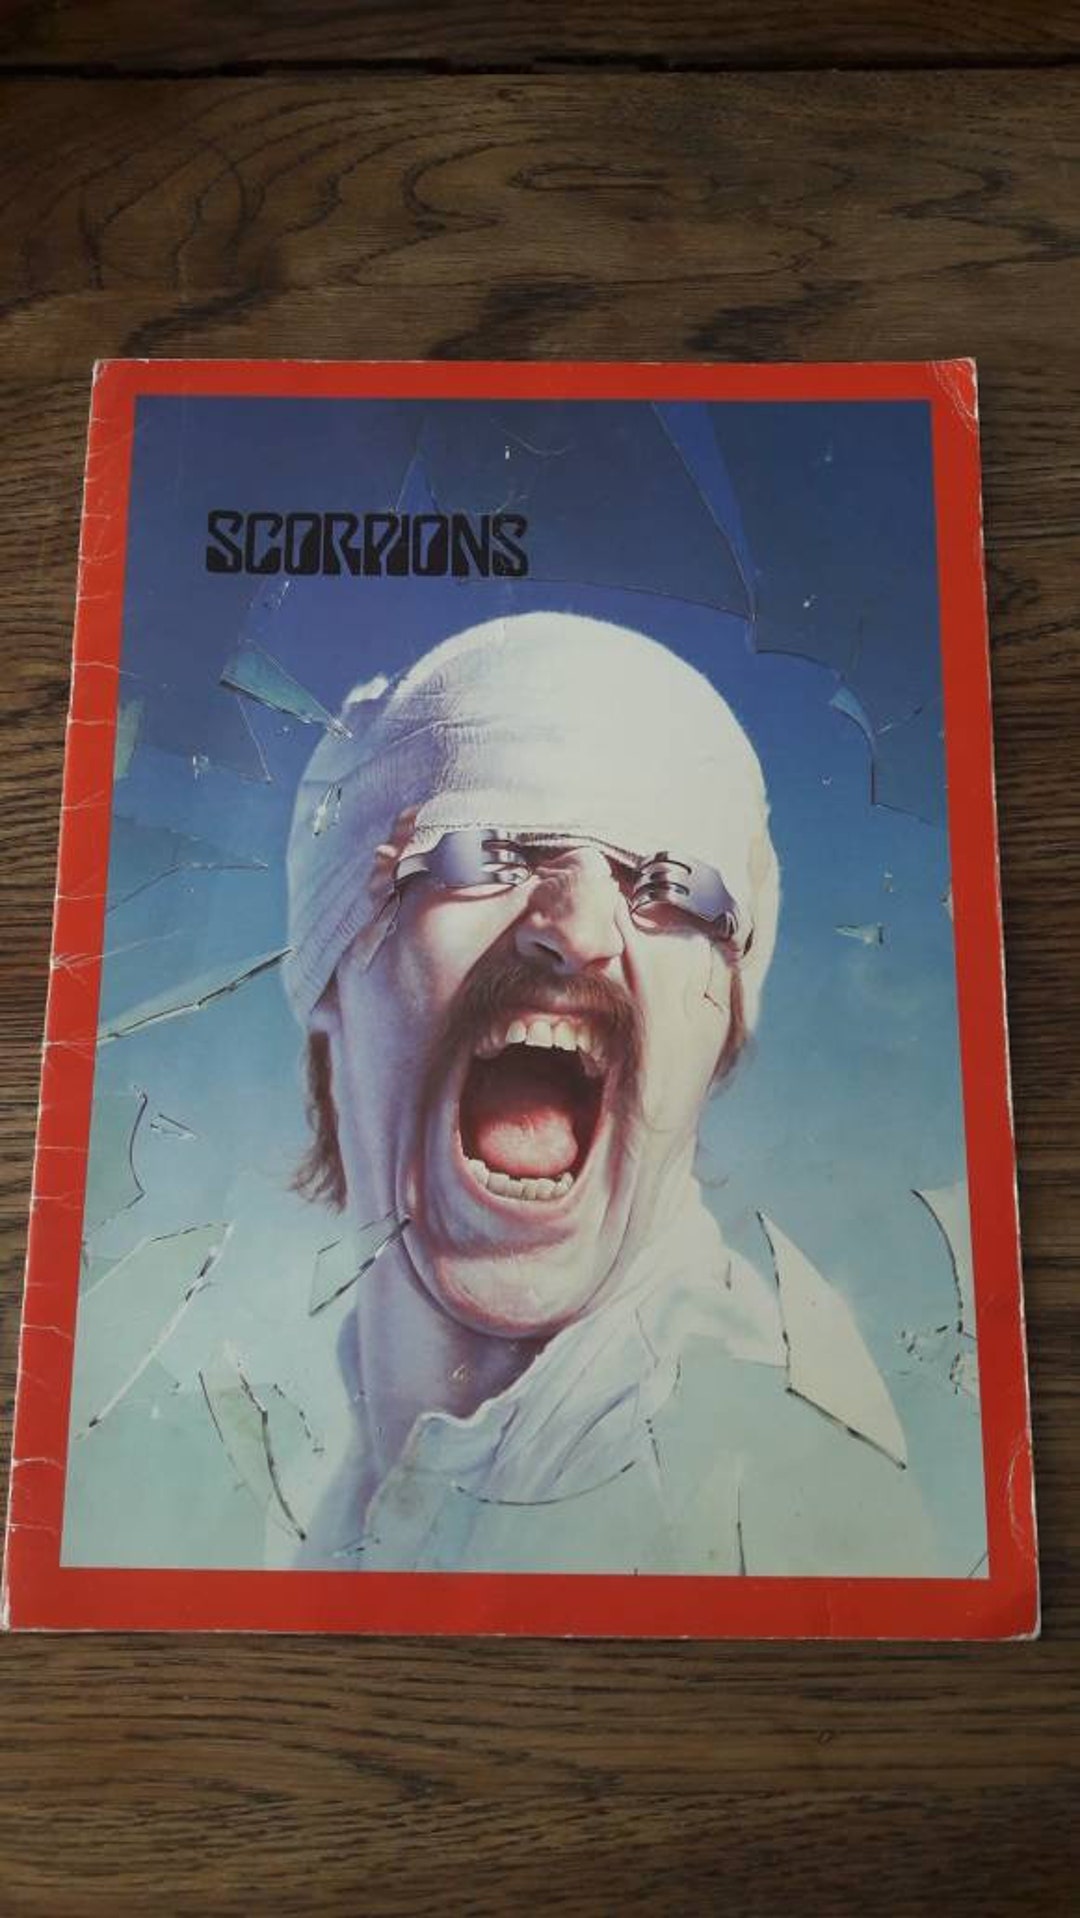 scorpions blackout tour 1982 setlist